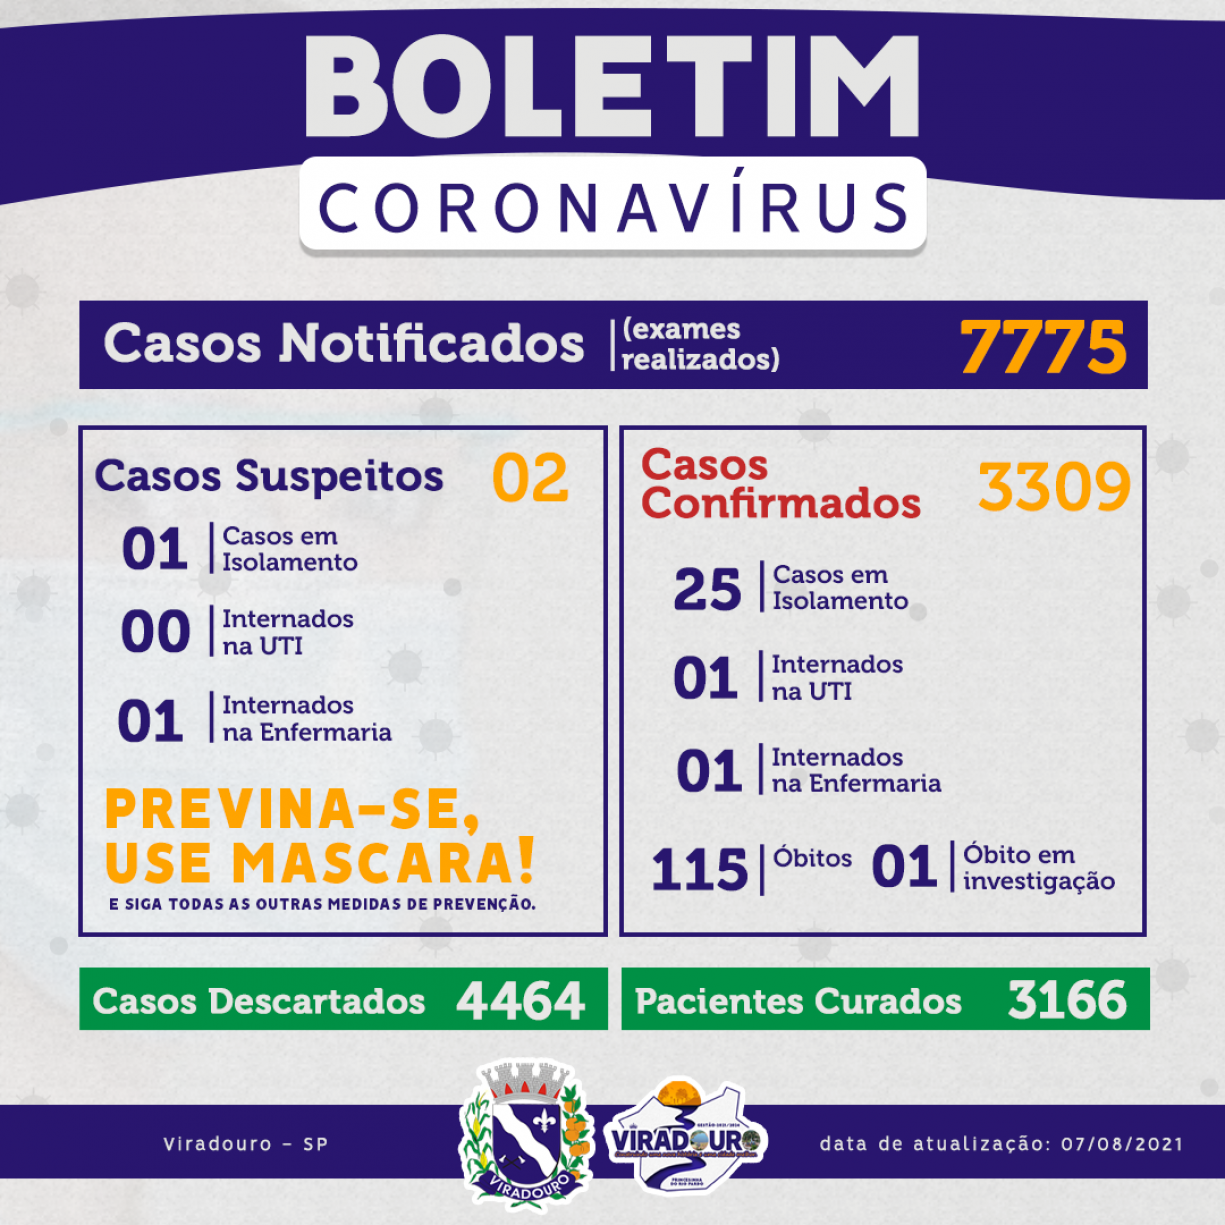 CORONAVÍRUS: BOLETIM EPIDEMIOLÓGICO (ATUALIZAÇÃO 07/08/2021)